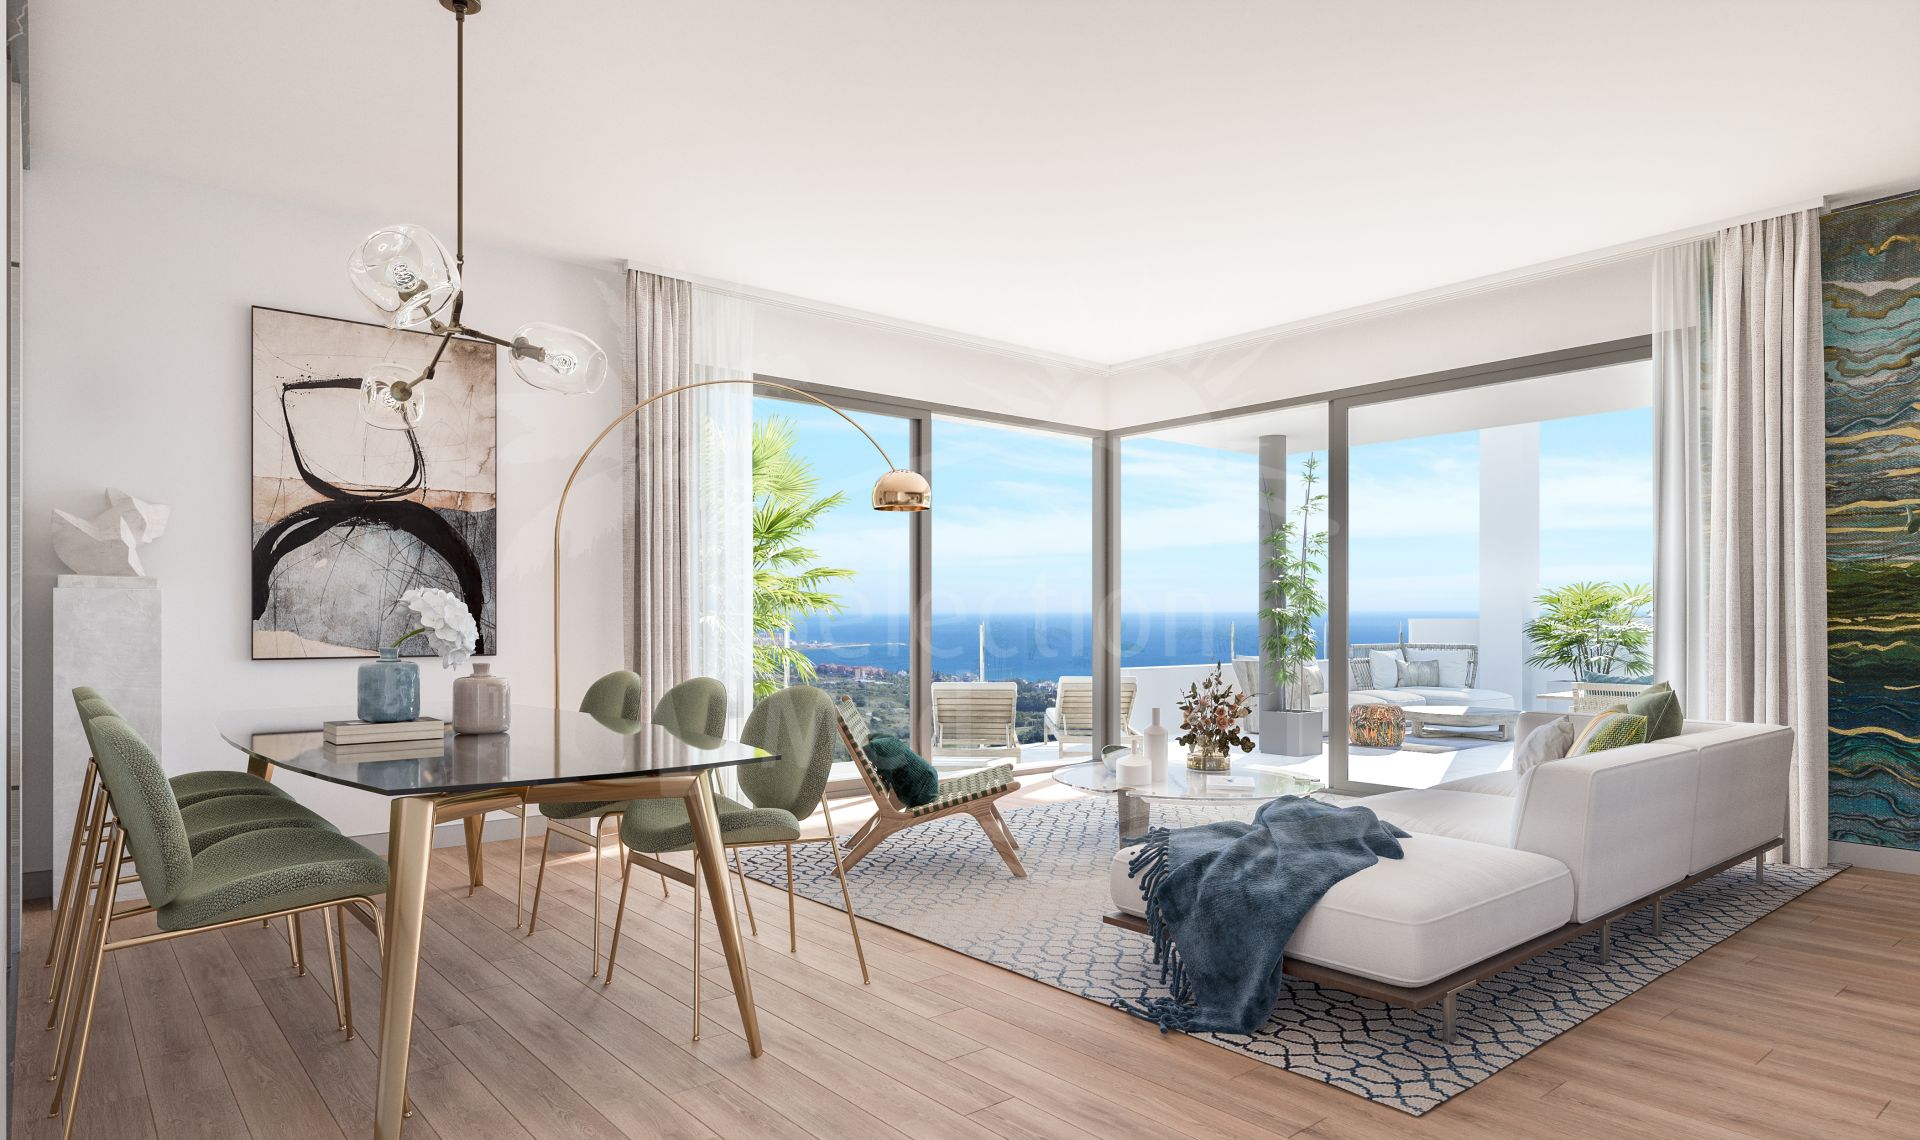 Stunning Brand New 3 Bedroom Apartment in Finca Cortesin, Casares.